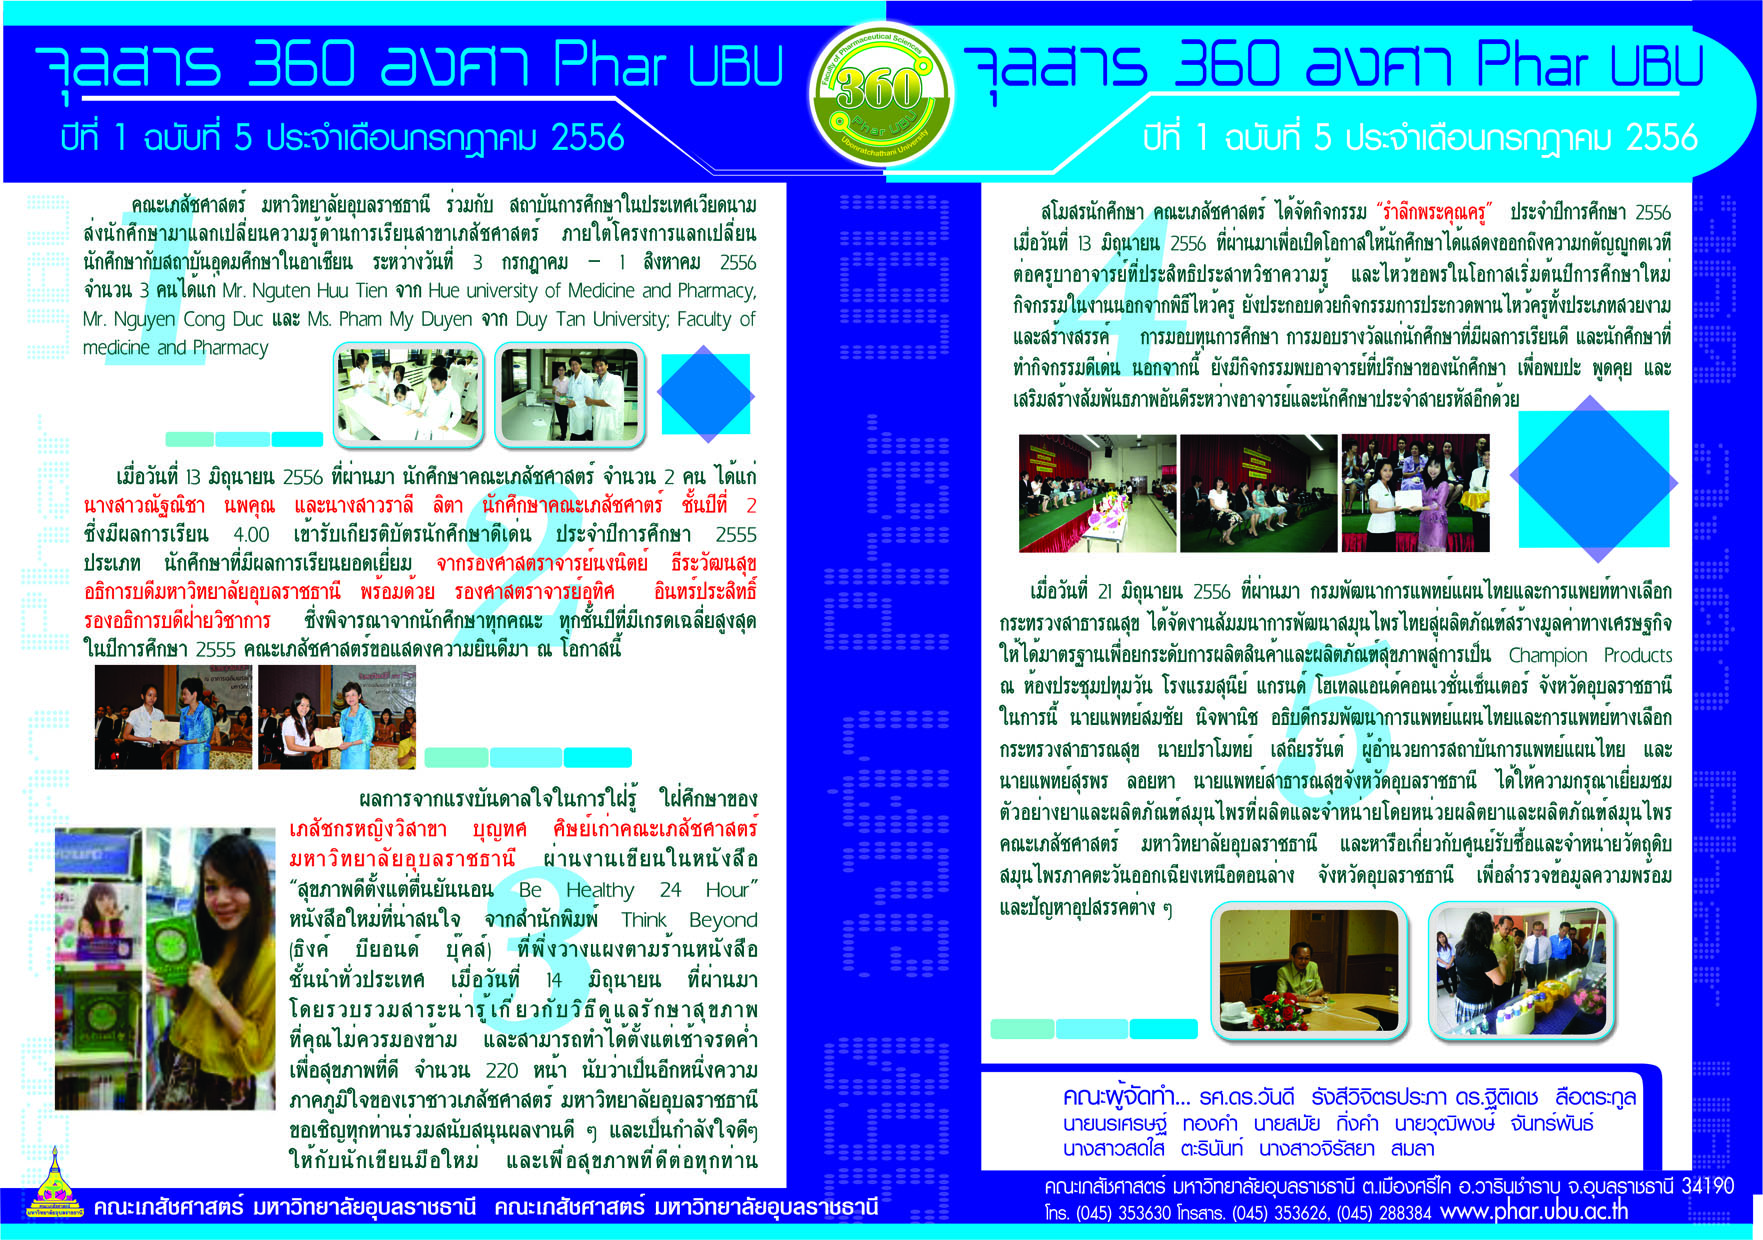 จุลสาร 360 องศา Phar UBU คณะเภสัชศาสตร์ ประจำเดือนพฤษภาคม 2556